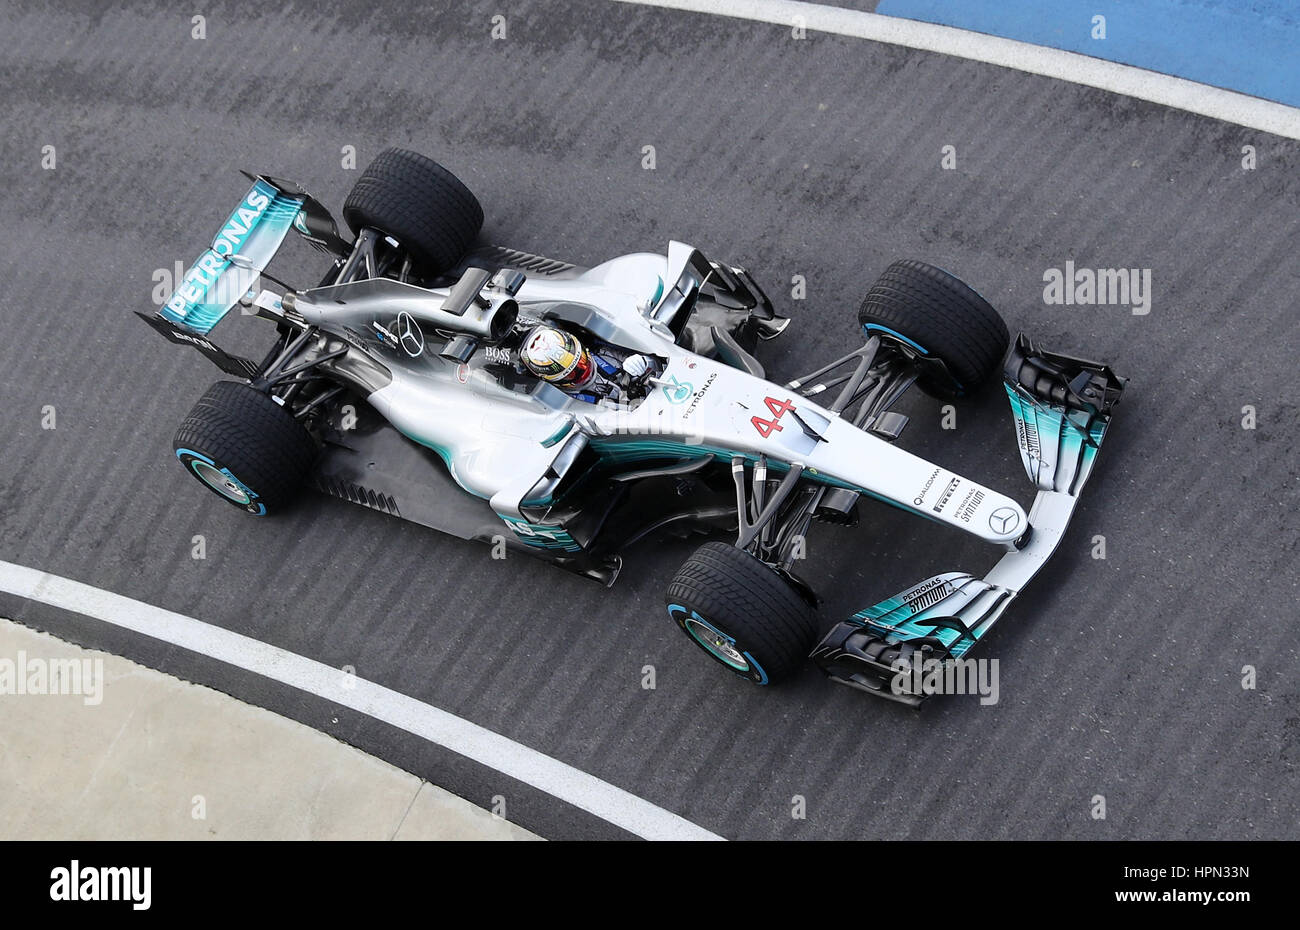 Lewis Hamilton in der neuen Mercedes W08 Formel1-Wagen während der Mercedes-AMG 2017 Auto Start in Silverstone, Towcester. Stockfoto